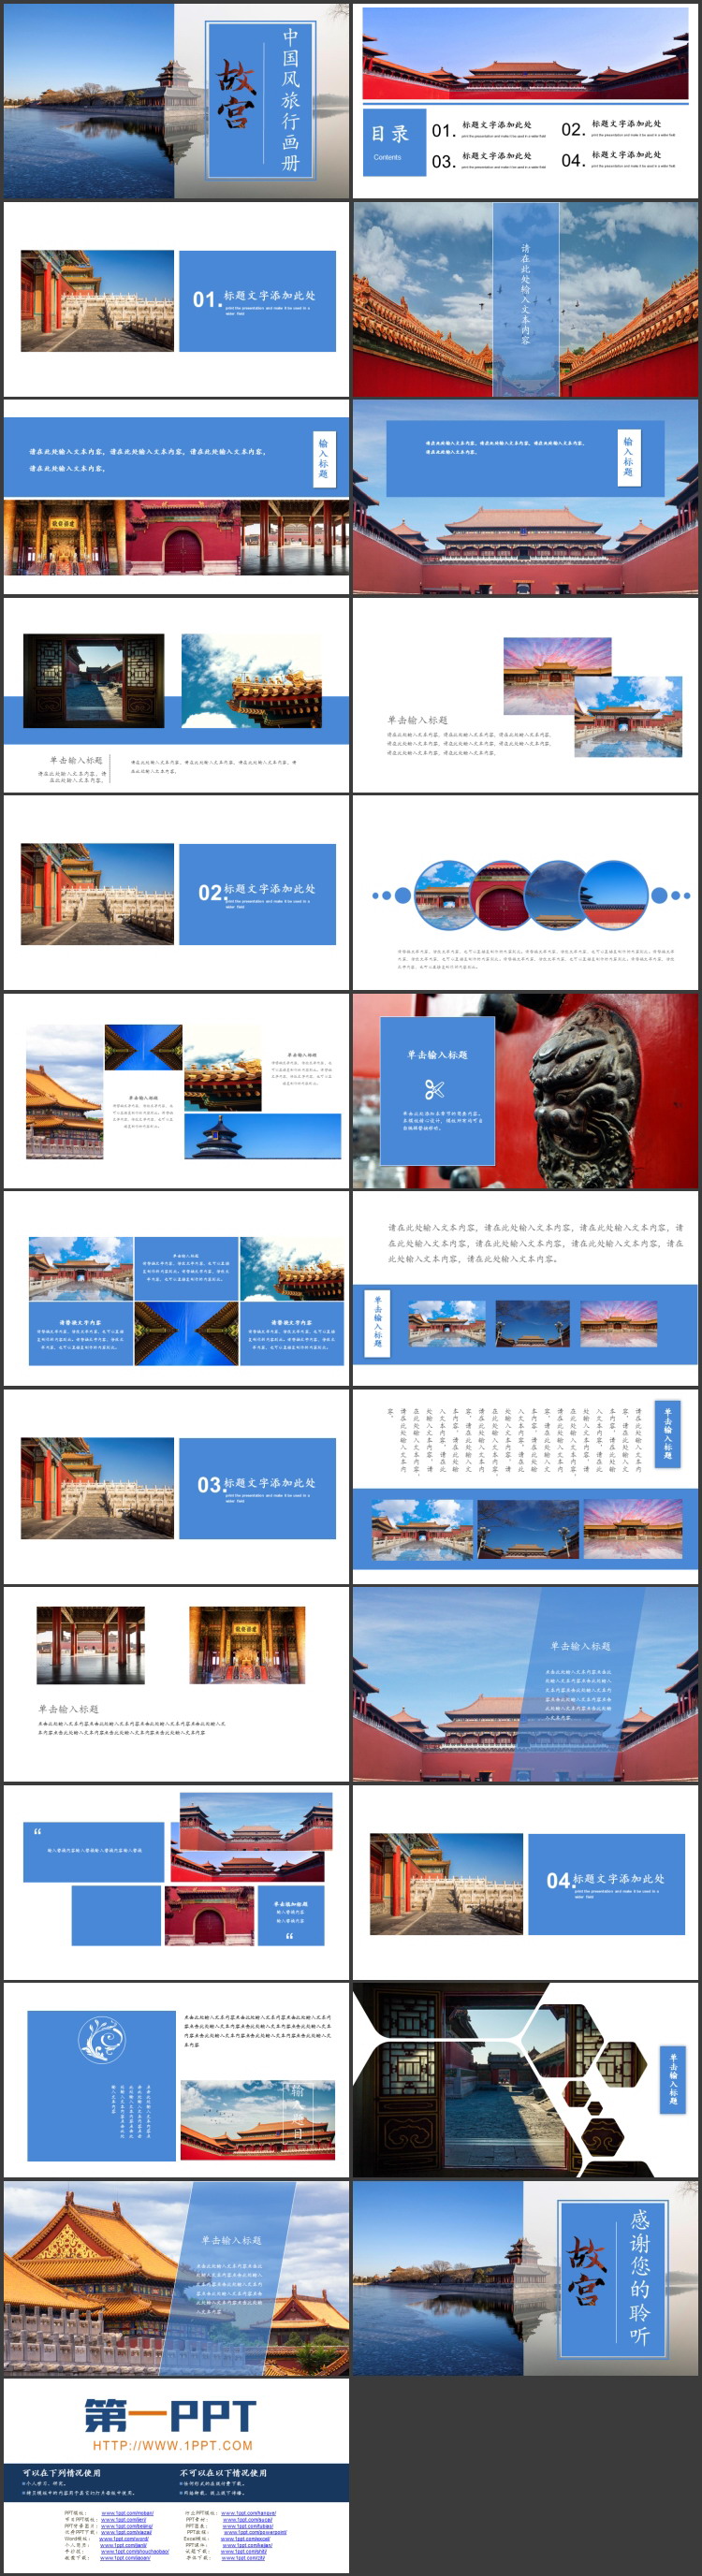 蓝色宫殿倒影背景故宫主题中国风旅行画册PPT模板